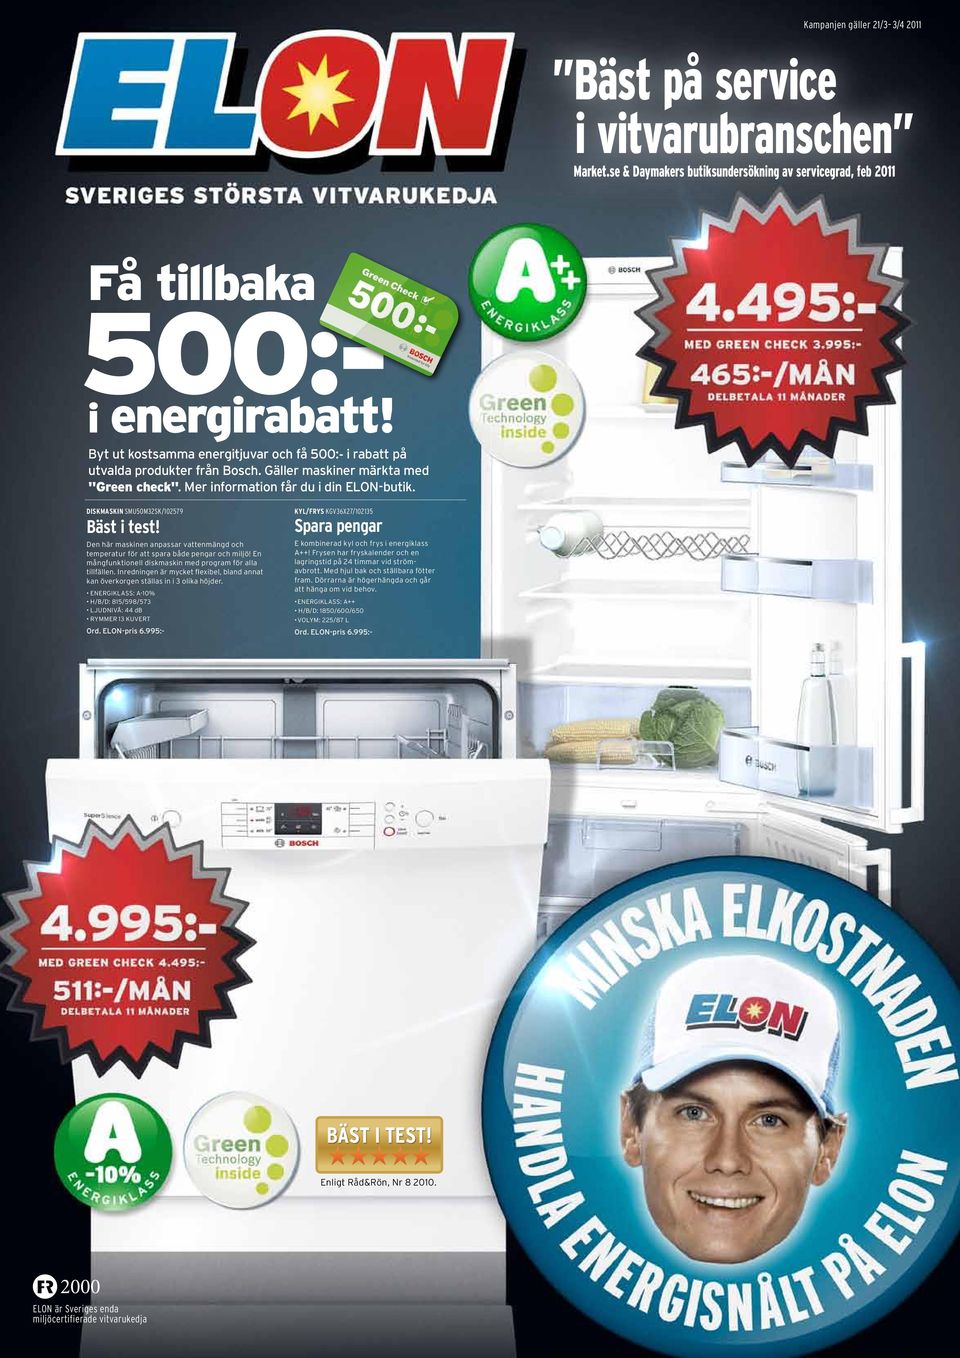 Under kampanjperioden 1 januari 31 mars 2011 får du 500 kr när du köpt en vitvara från Bosch Green Technology inside-sortiment. Läs mer på bosch-home.se/green-technology.